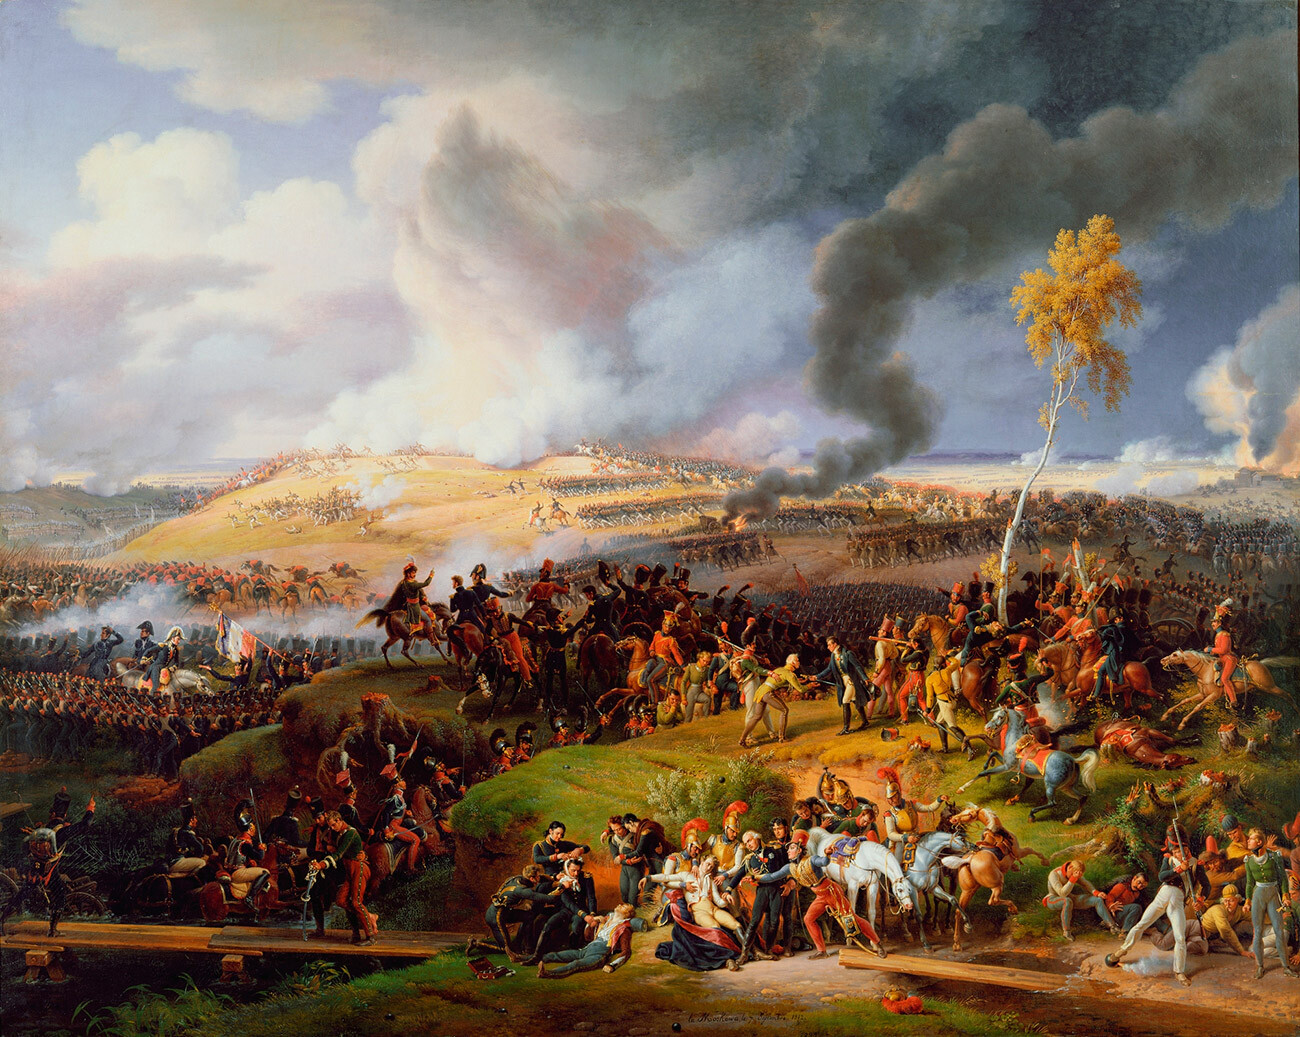 La battaglia di Mosca (1822)

